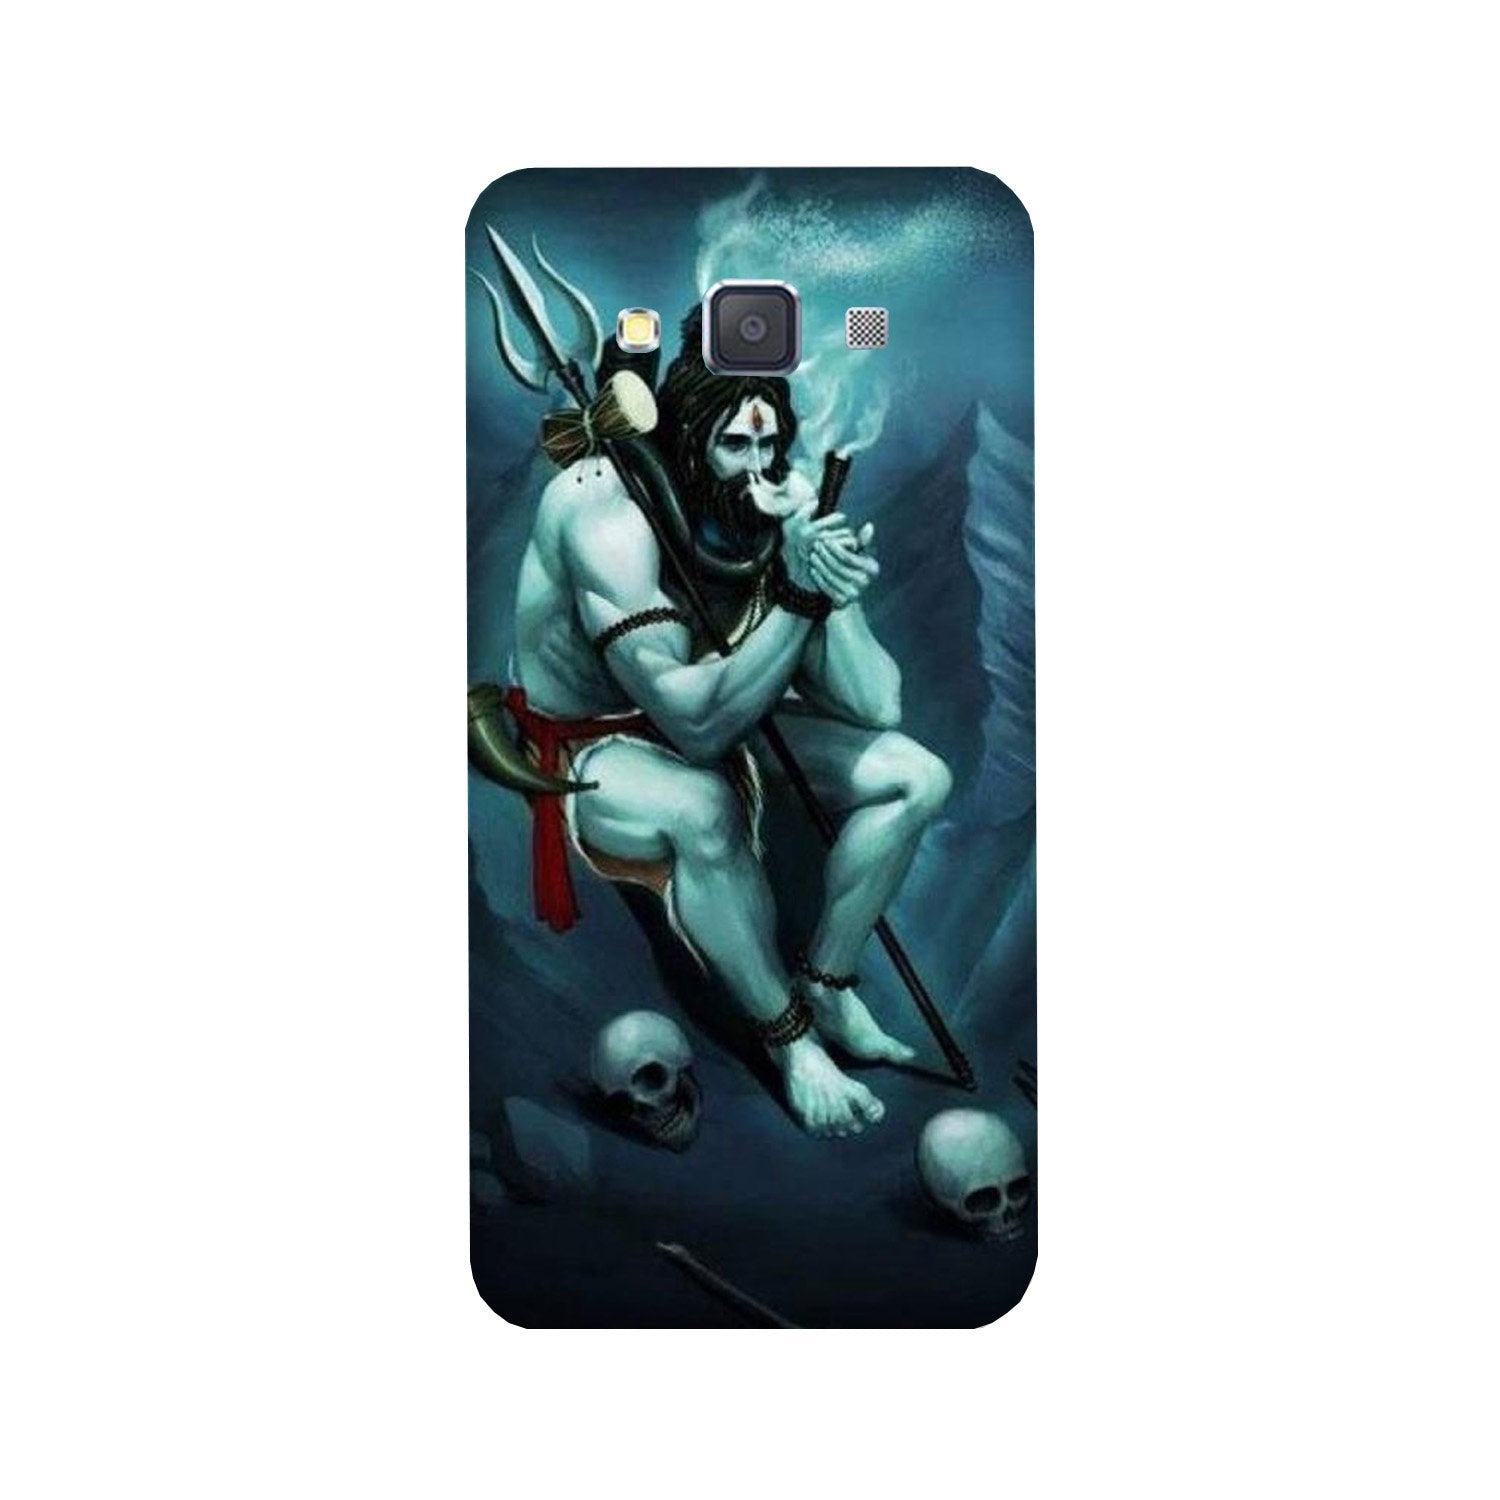 Lord Shiva Mahakal2 Case for Galaxy A5 (2015)